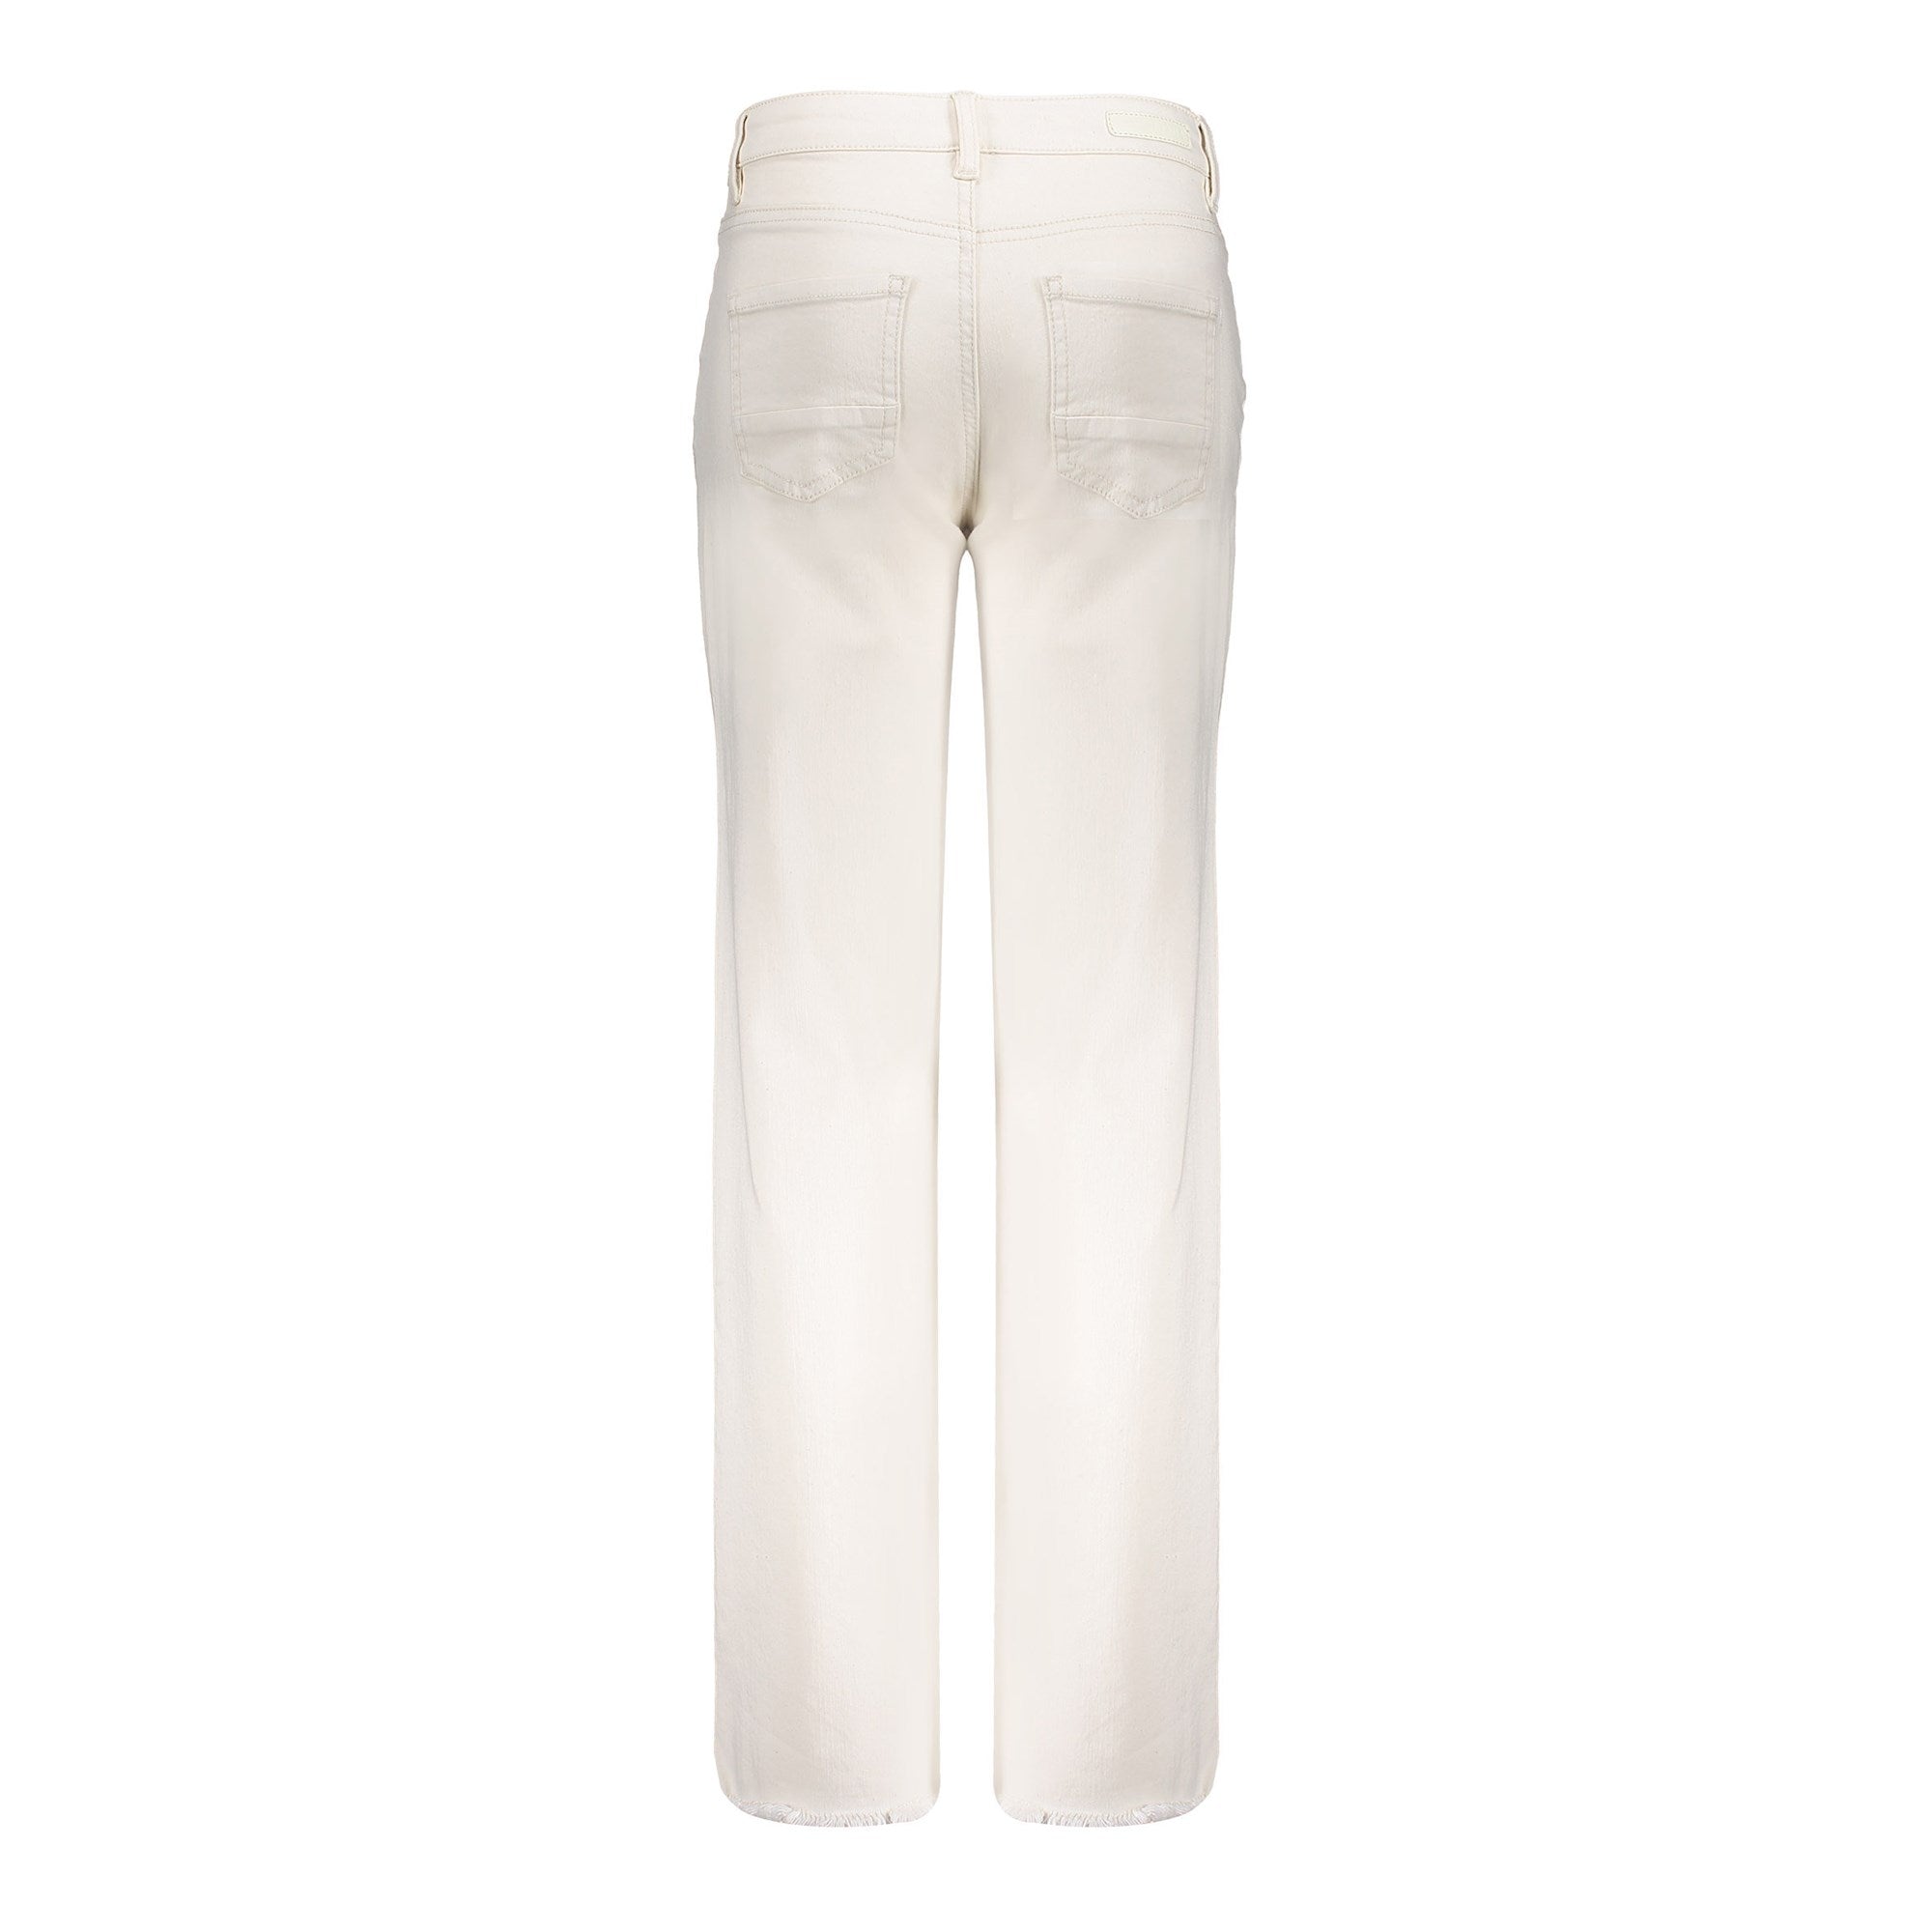 Meisjes Jeans wide + split van Geisha in de kleur Ecru/White in maat 176.